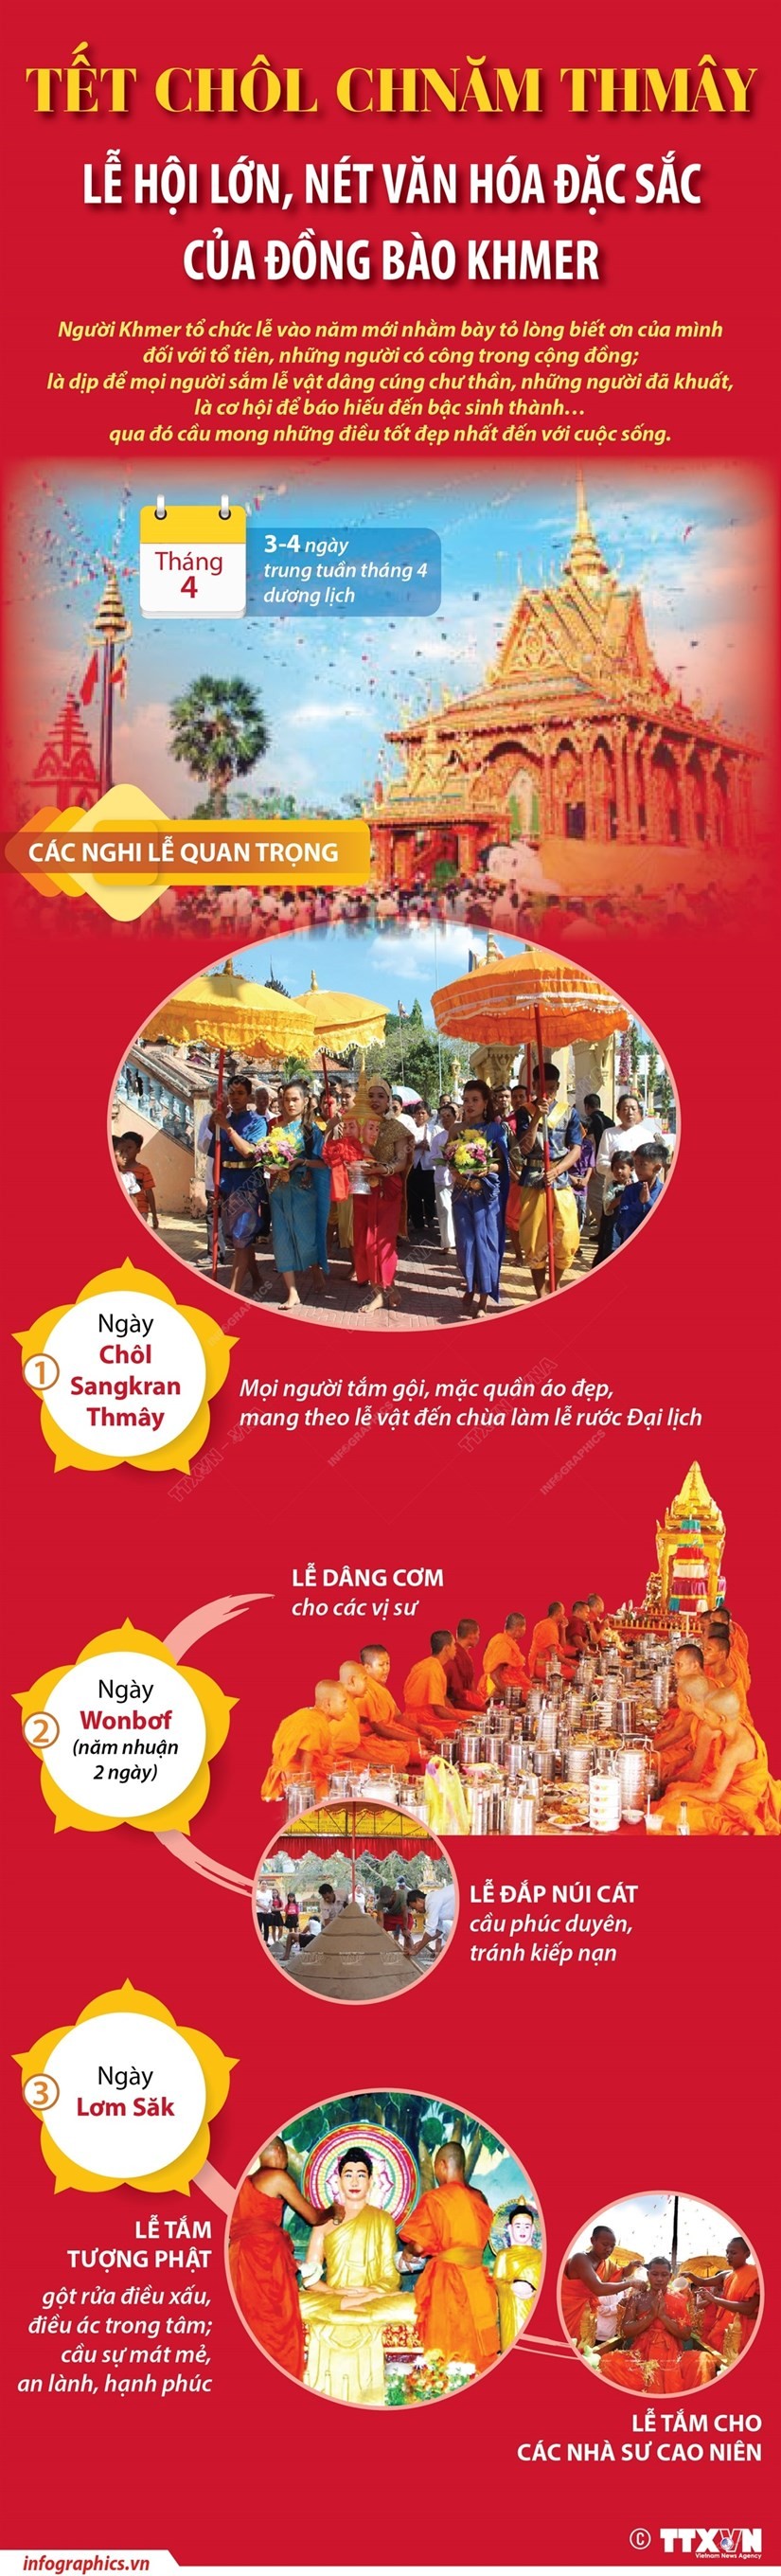 Chôl Chnăm Thmây - Lễ hội lớn, nét văn hóa đặc sắc của đồng bào Khmer | Xã hội | Vietnam+ (VietnamPlus)